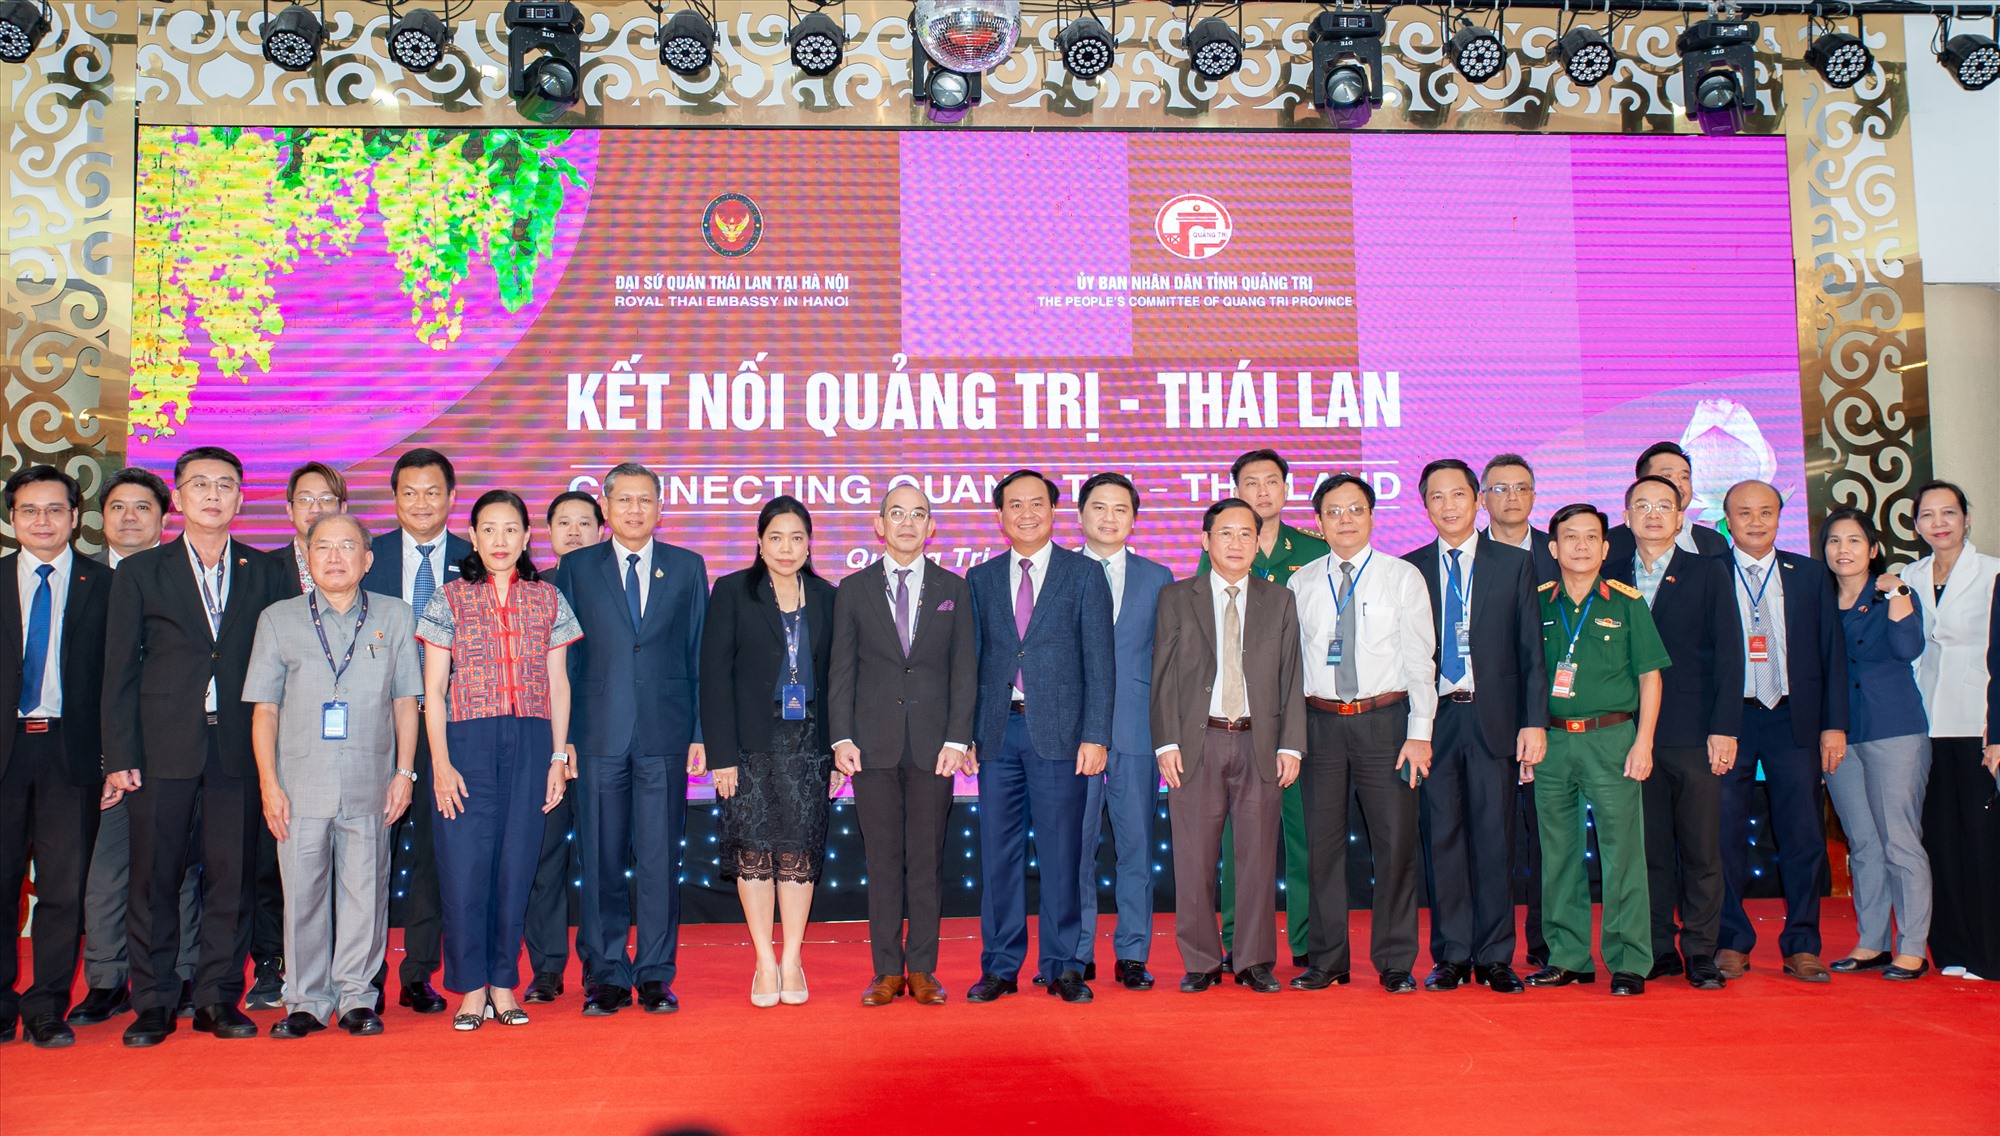 Quảng Trị chủ động đón đầu cơ hội hợp tác đầu tư từ Thái Lan